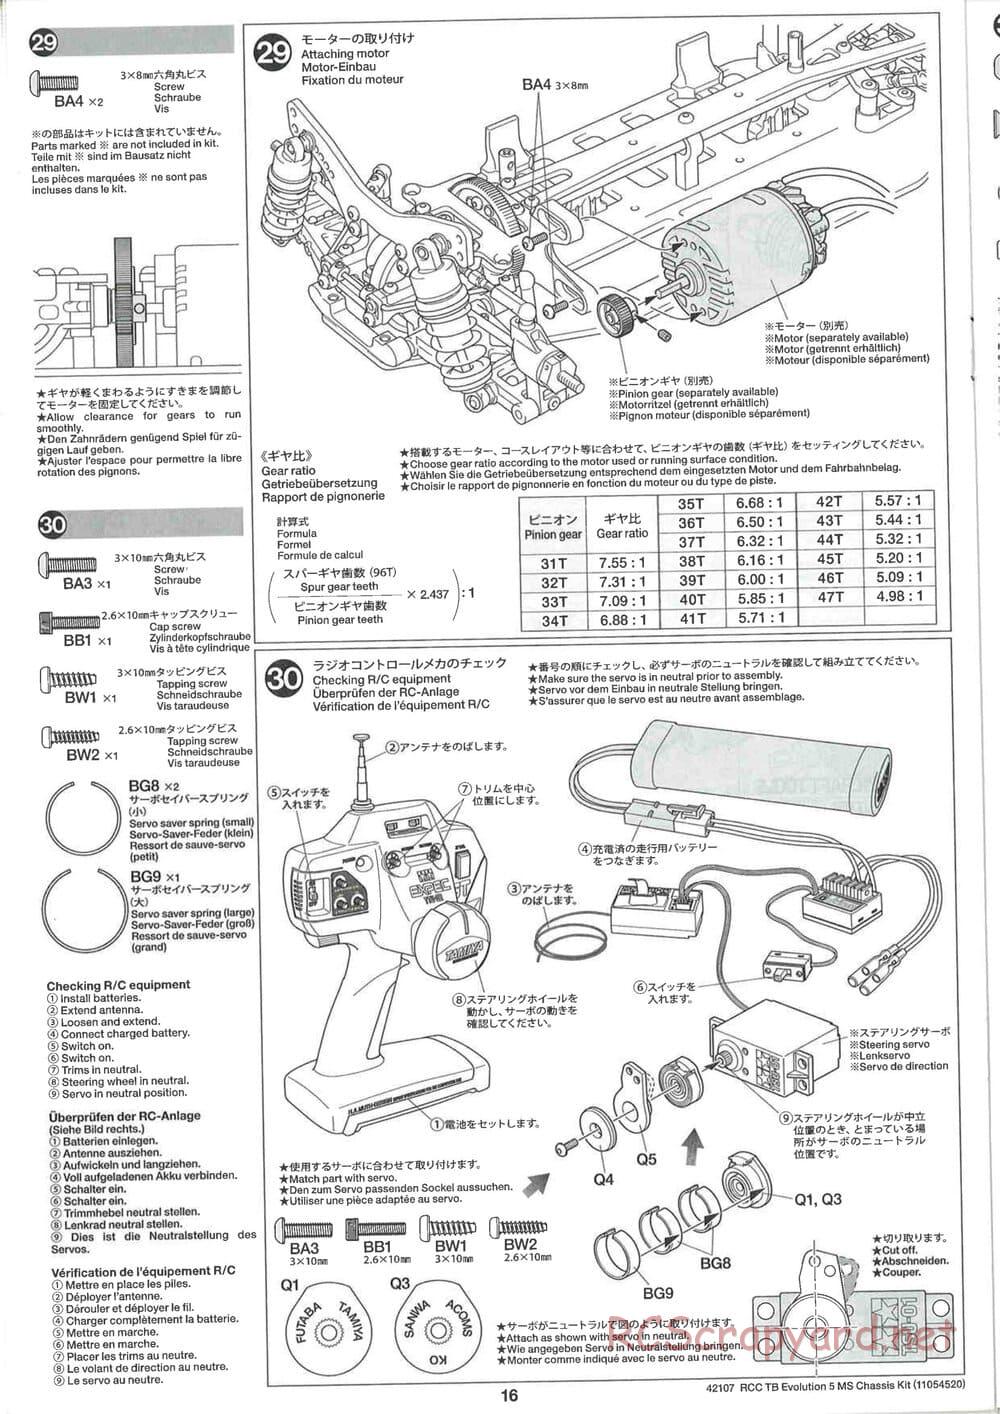 Tamiya - TB Evolution 5 MS Chassis - Manual - Page 16